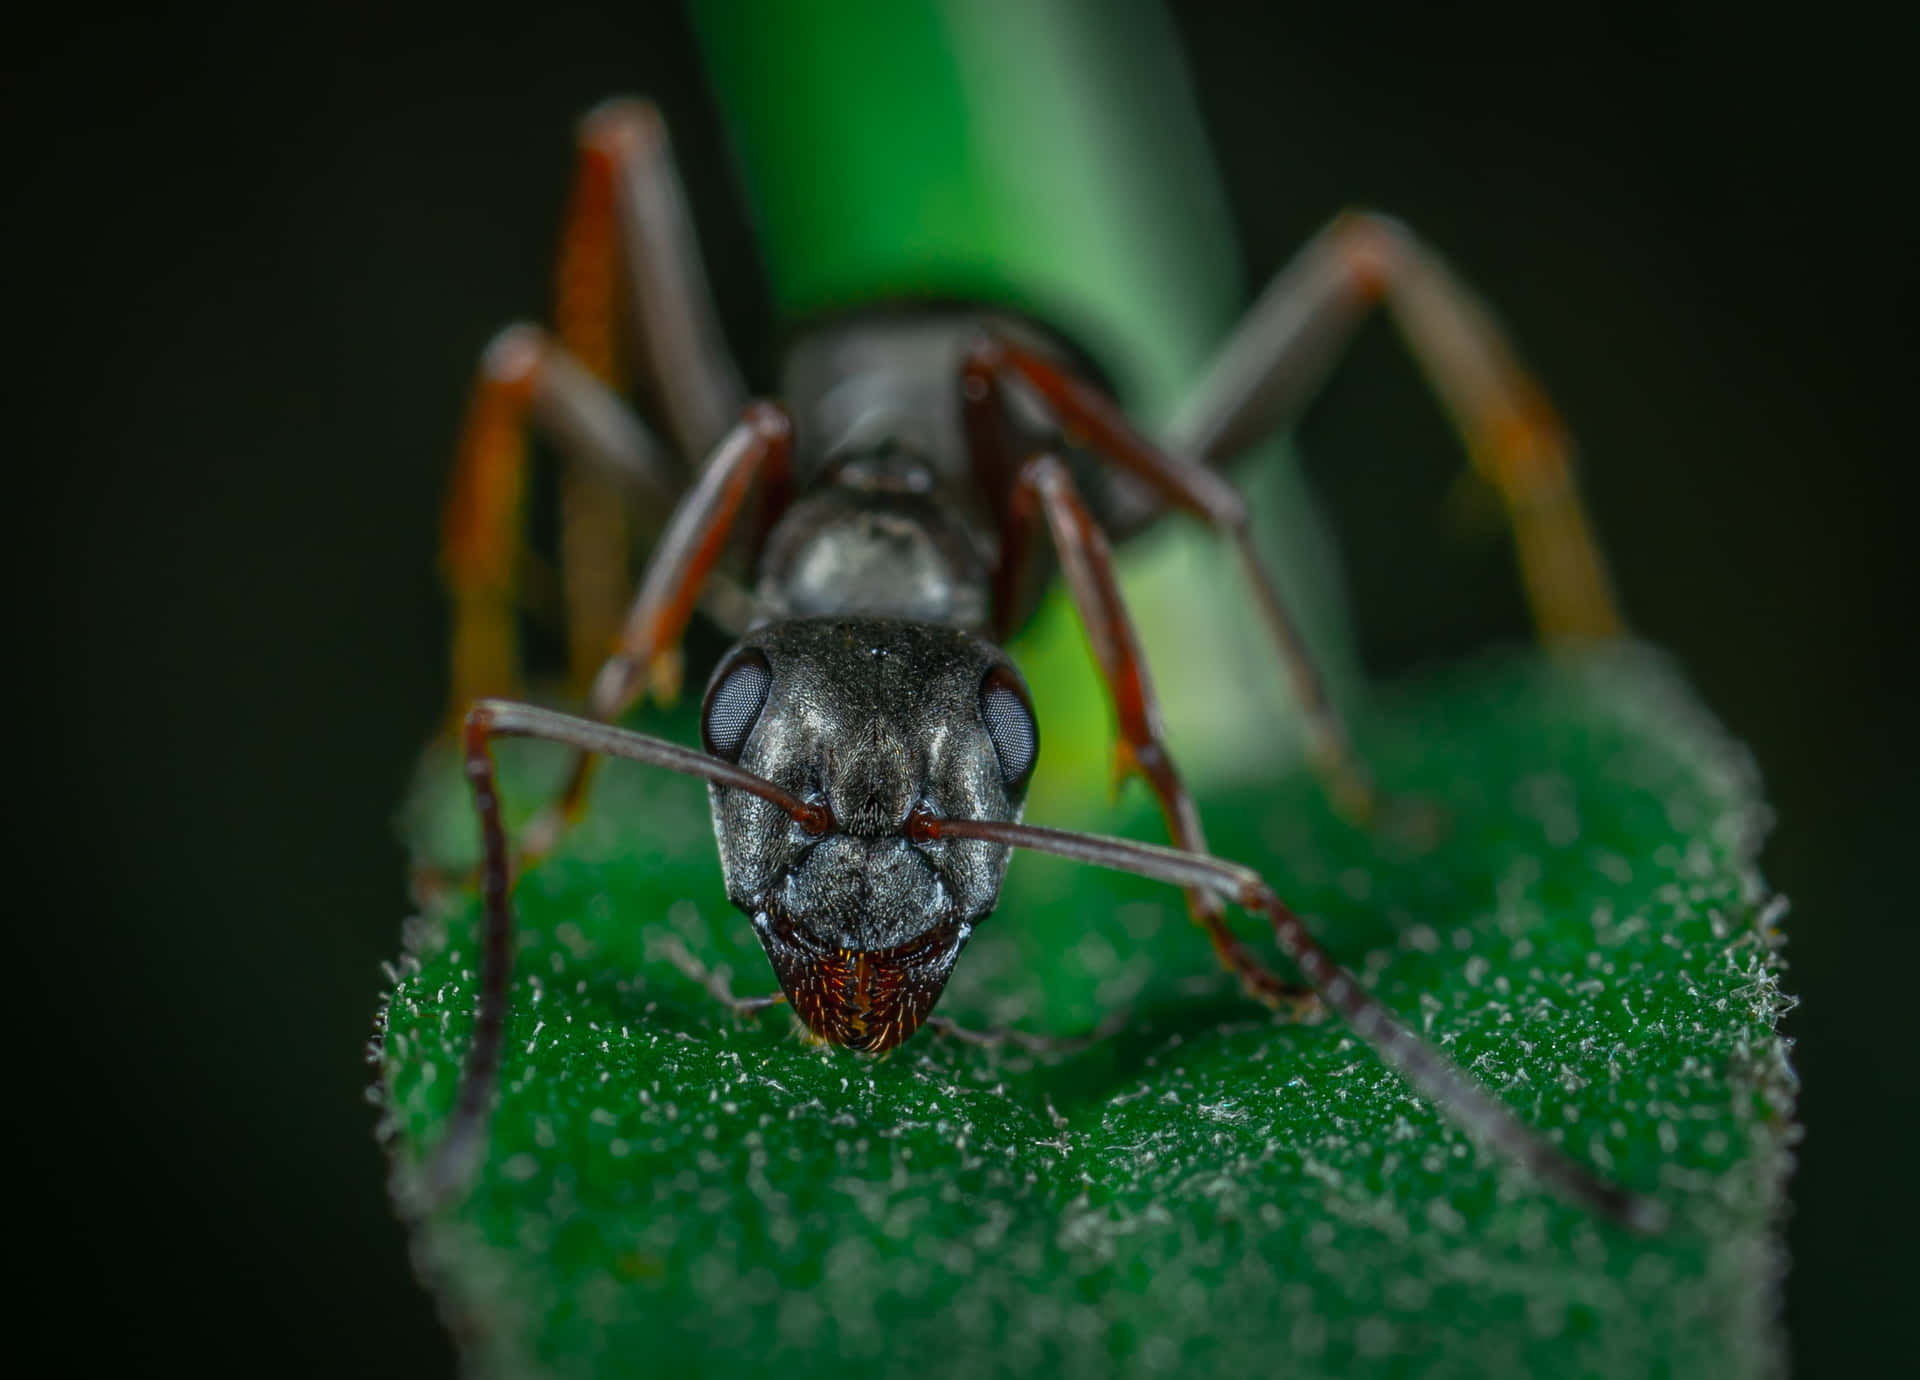 An Ant Sitting on a Leaf